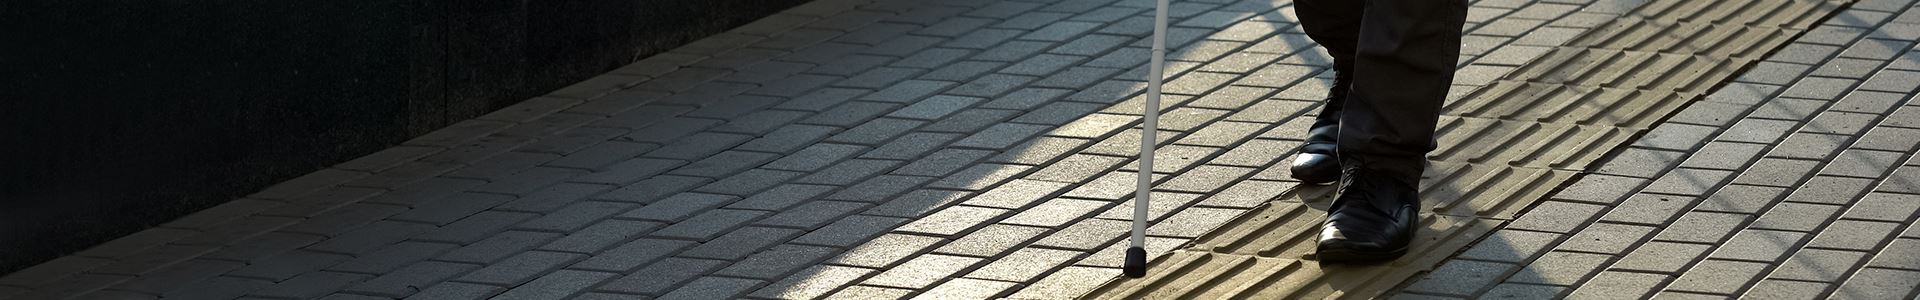 Imagem da parte inferior de um corpo, usando calças e sapatos pretos, e com uma bengala para deficientes visuais, numa calçada cinza com uma barra de piso tátil para deficientes visuais.